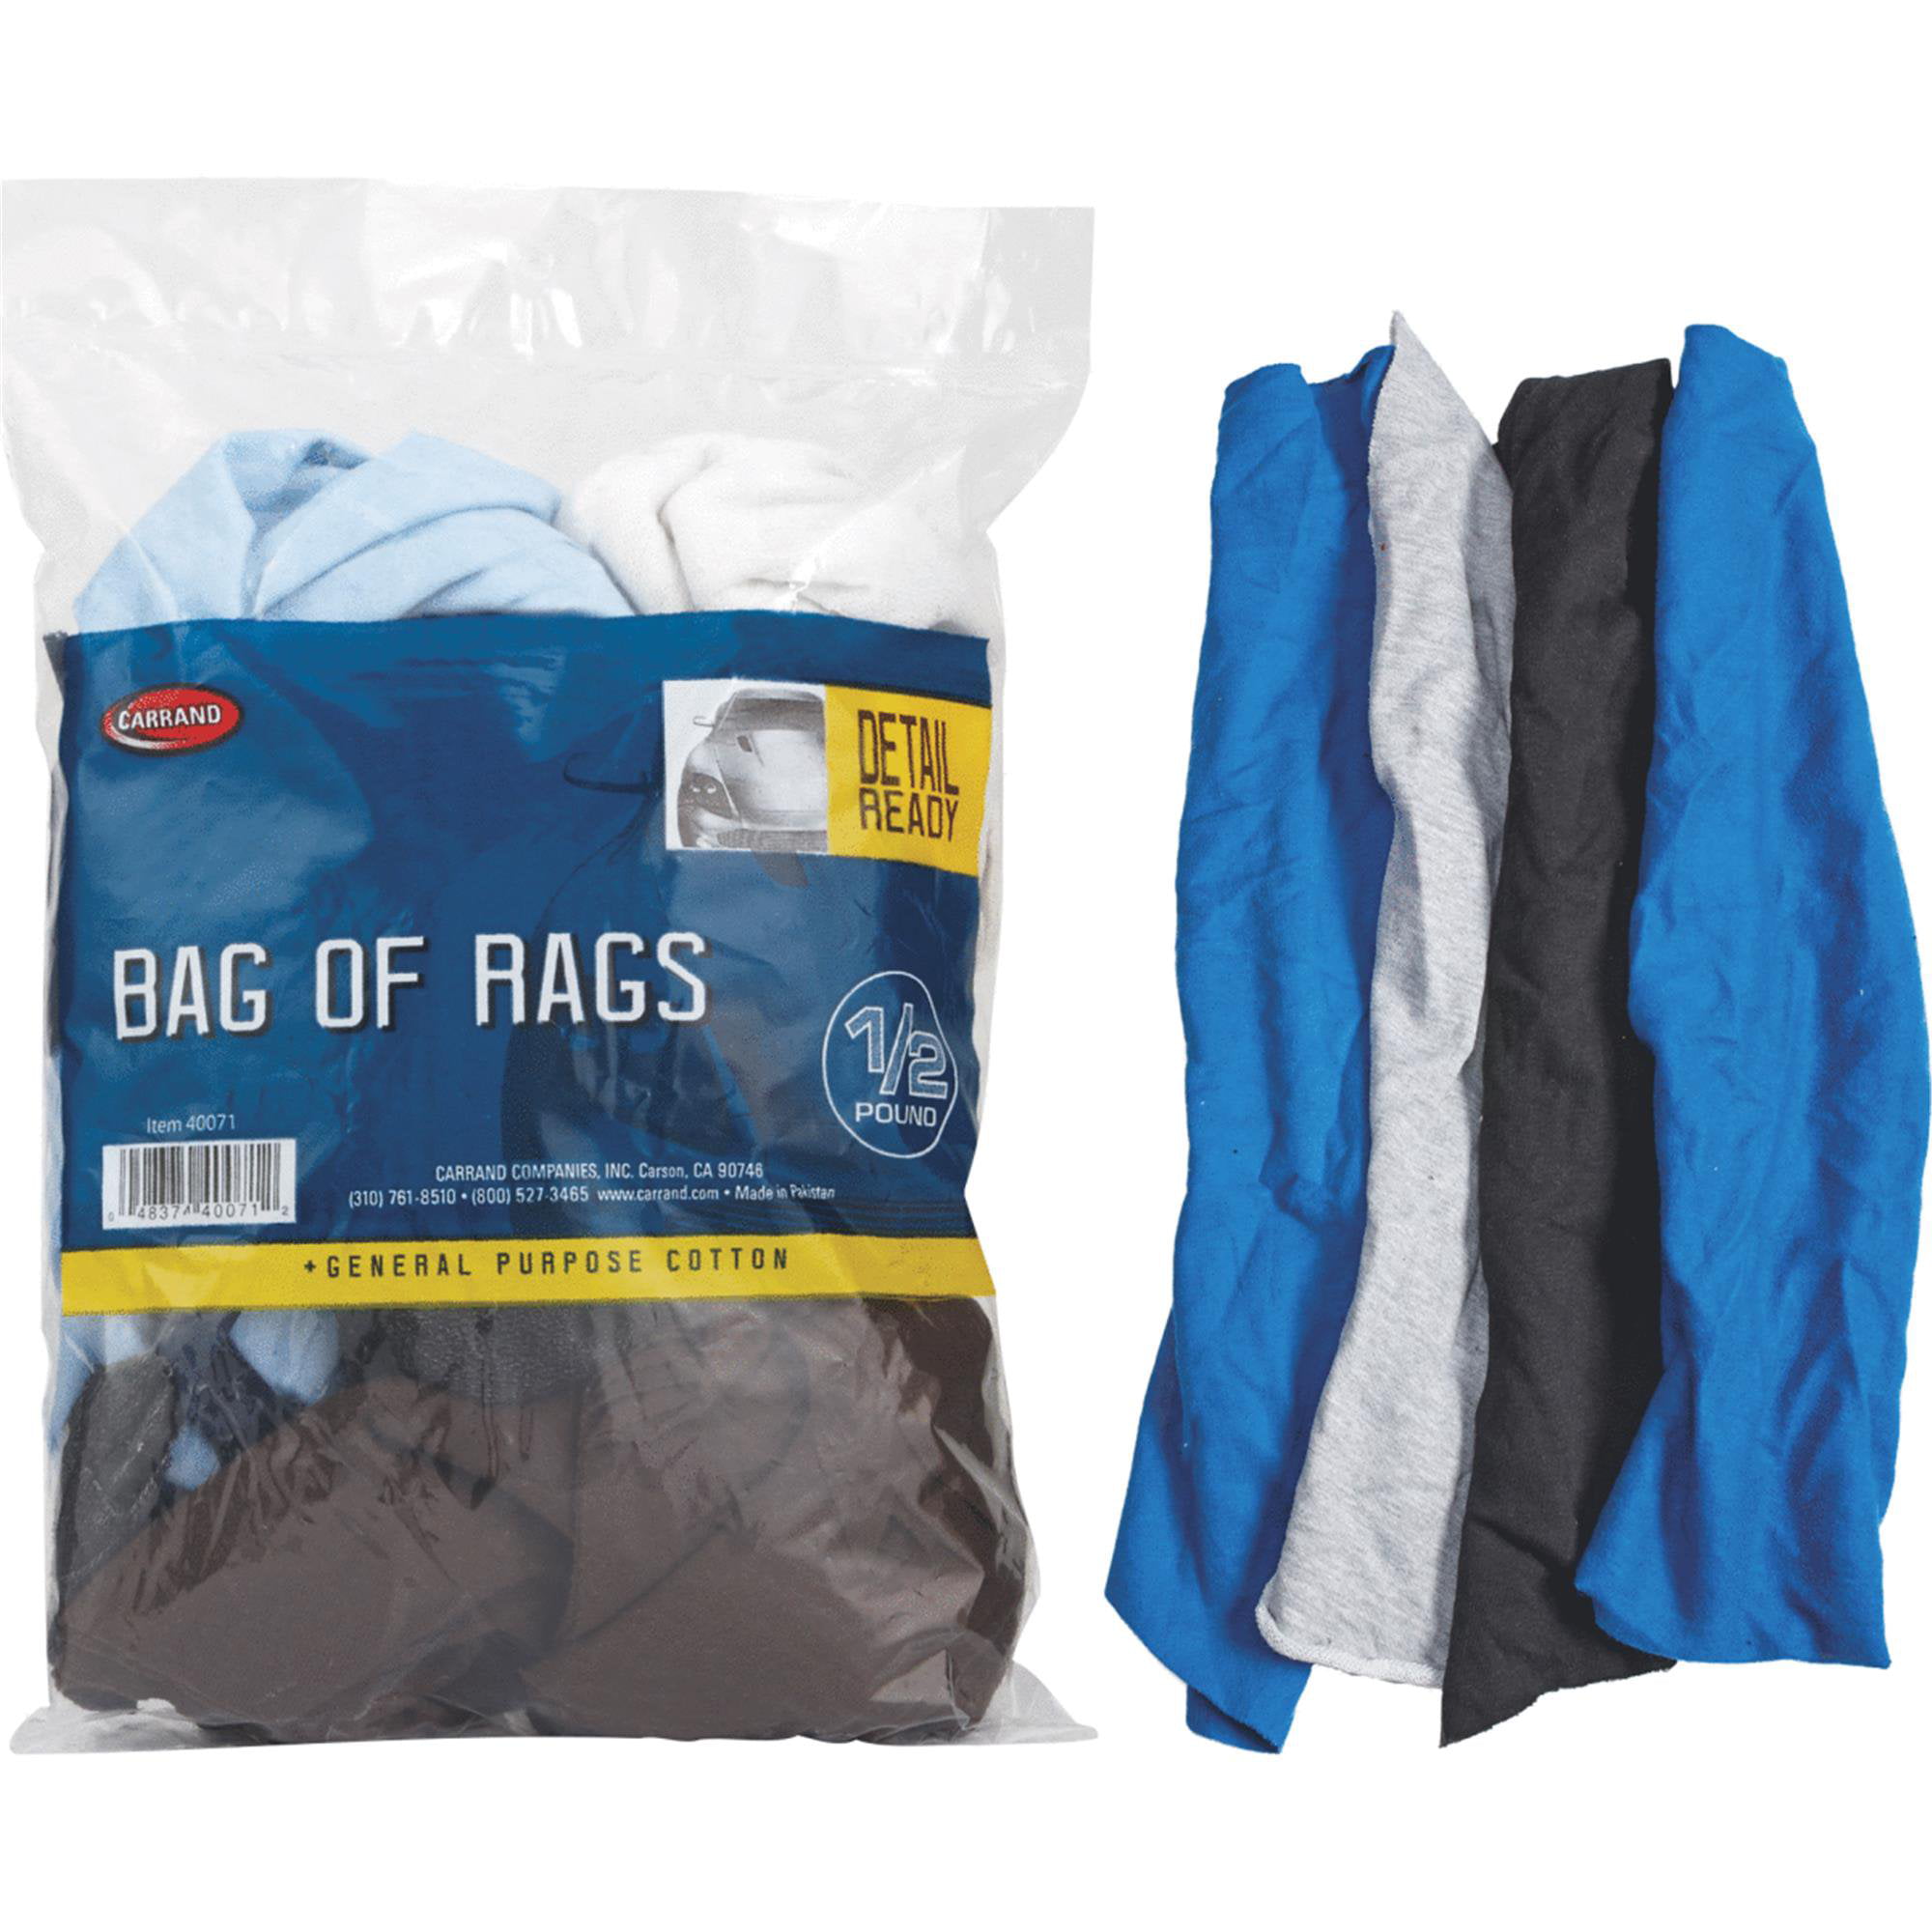 Bag of Rags 1/2 lb - Walmart.com - Walmart.com